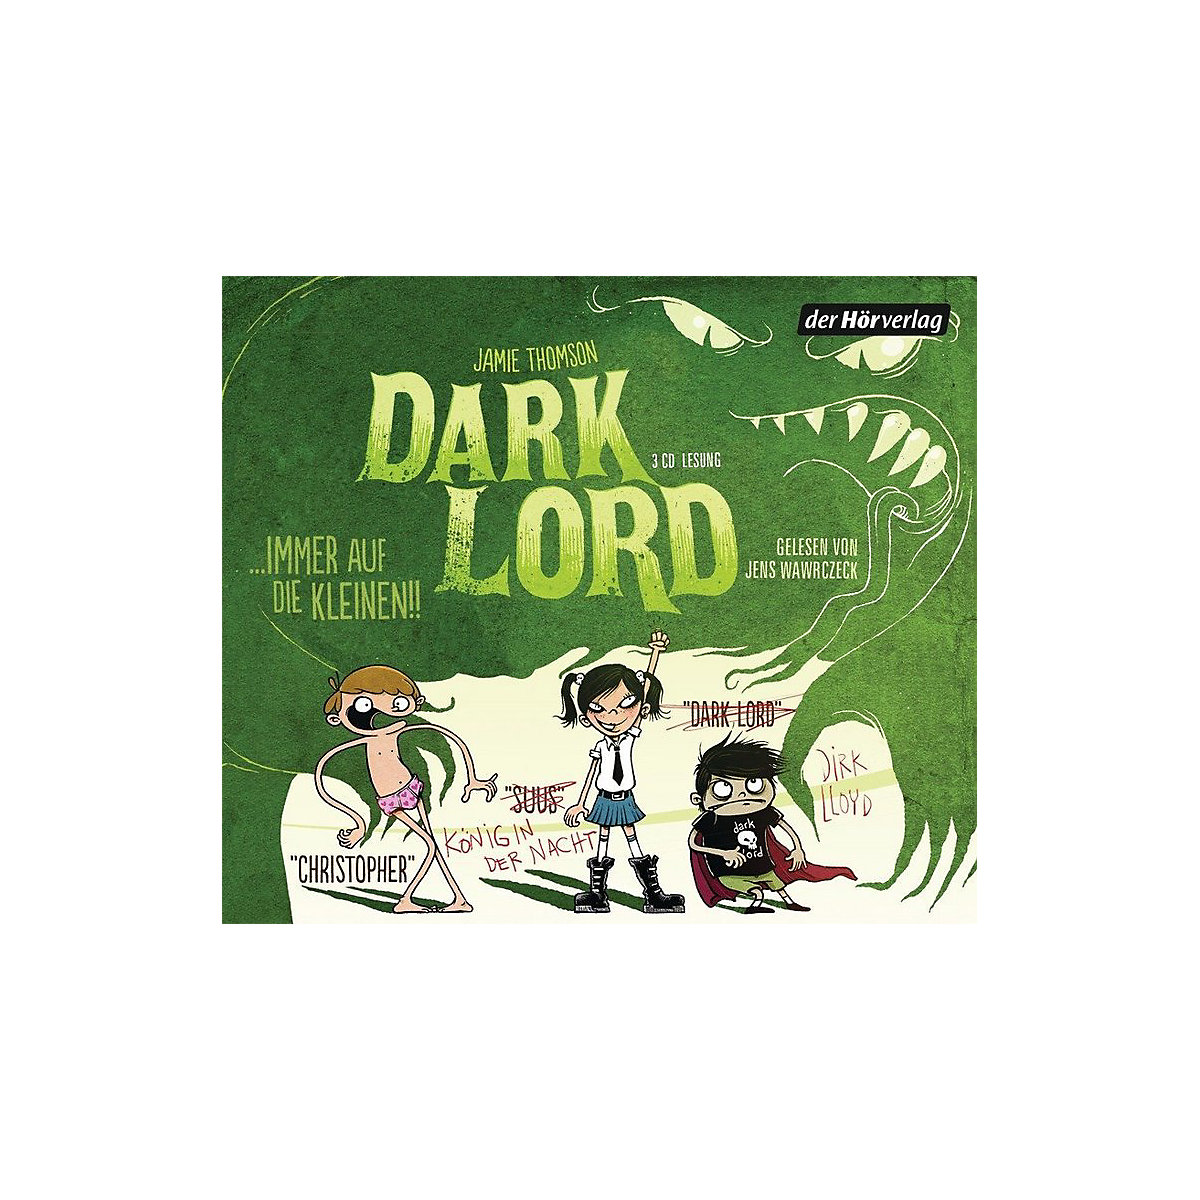 Dark Lord: Immer auf die Kleinen! 3 Audio-CDs